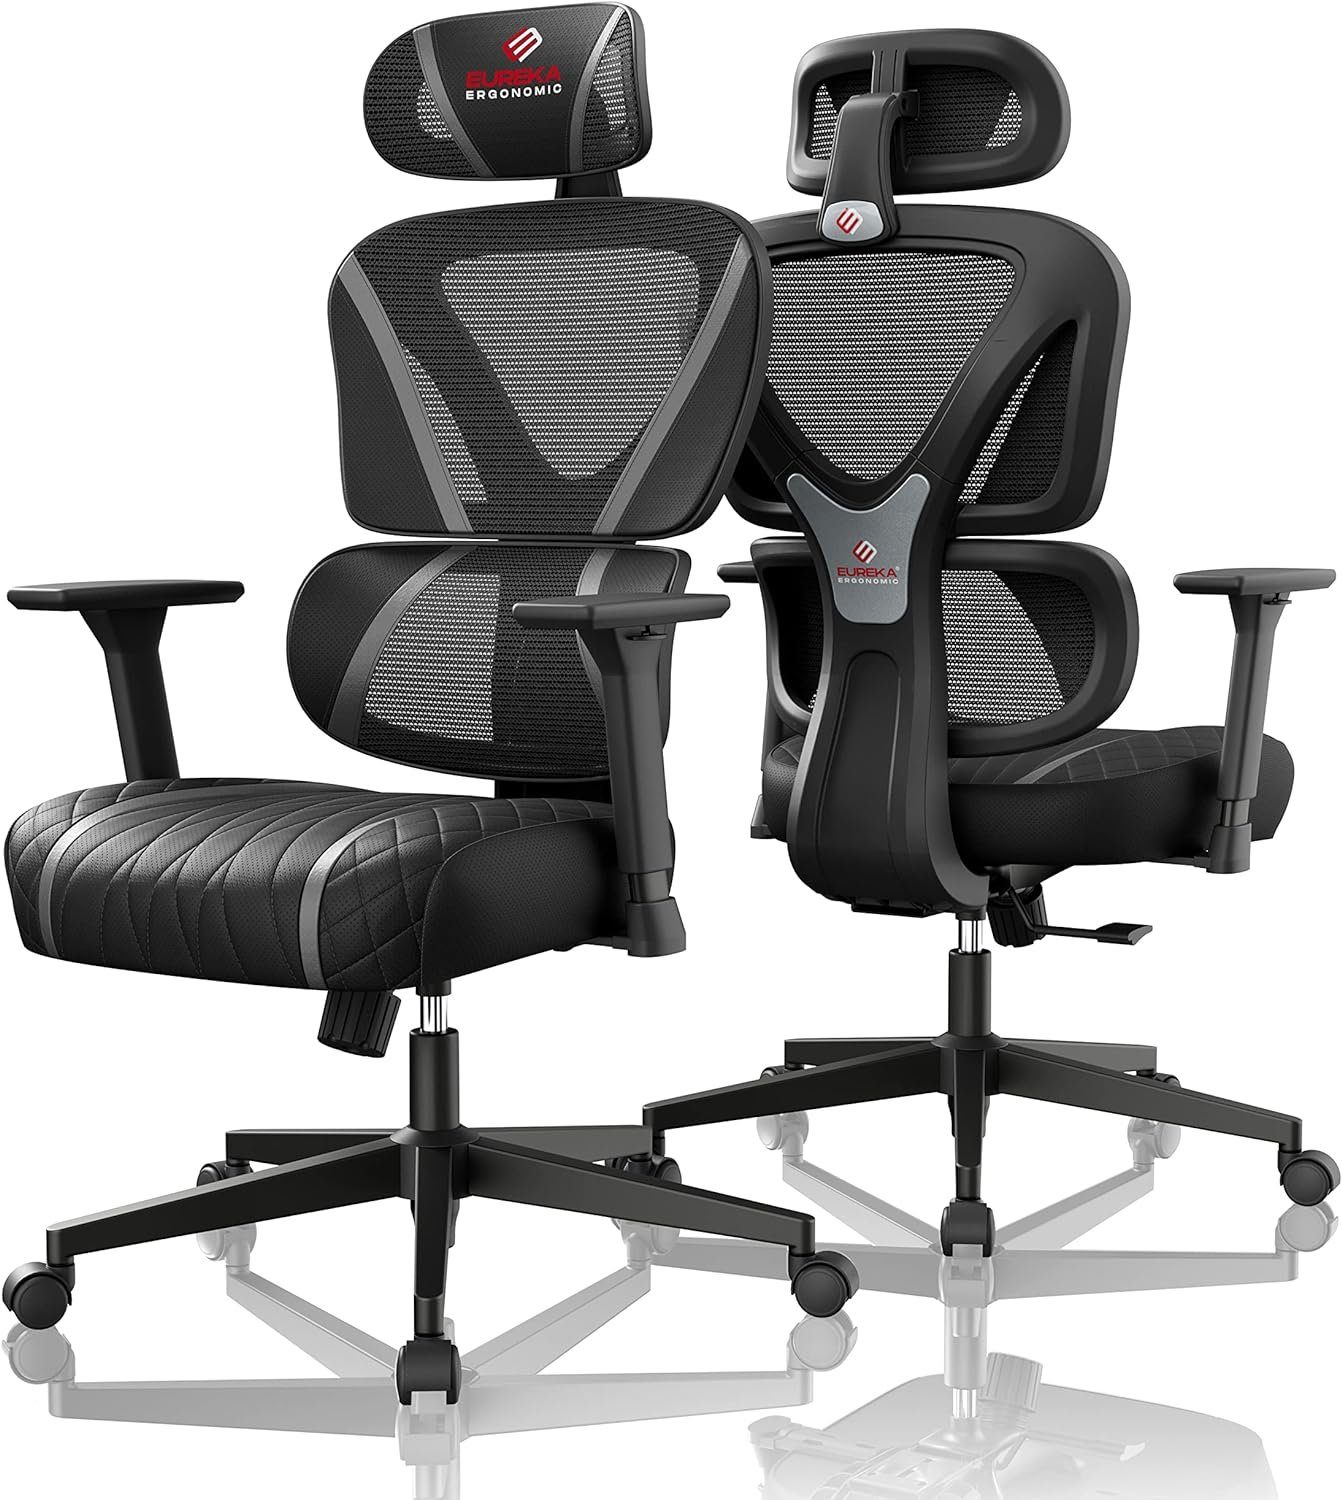 EE EUREKA ERGONOMIC Gaming-Stuhl (S-förmiges Rückenlehnen-Design,135° verstellbare Rückenlehne), Schwingstuhl, 3D-Armlehnen, höhenverstellbar Atmungsaktiv bis 136kg